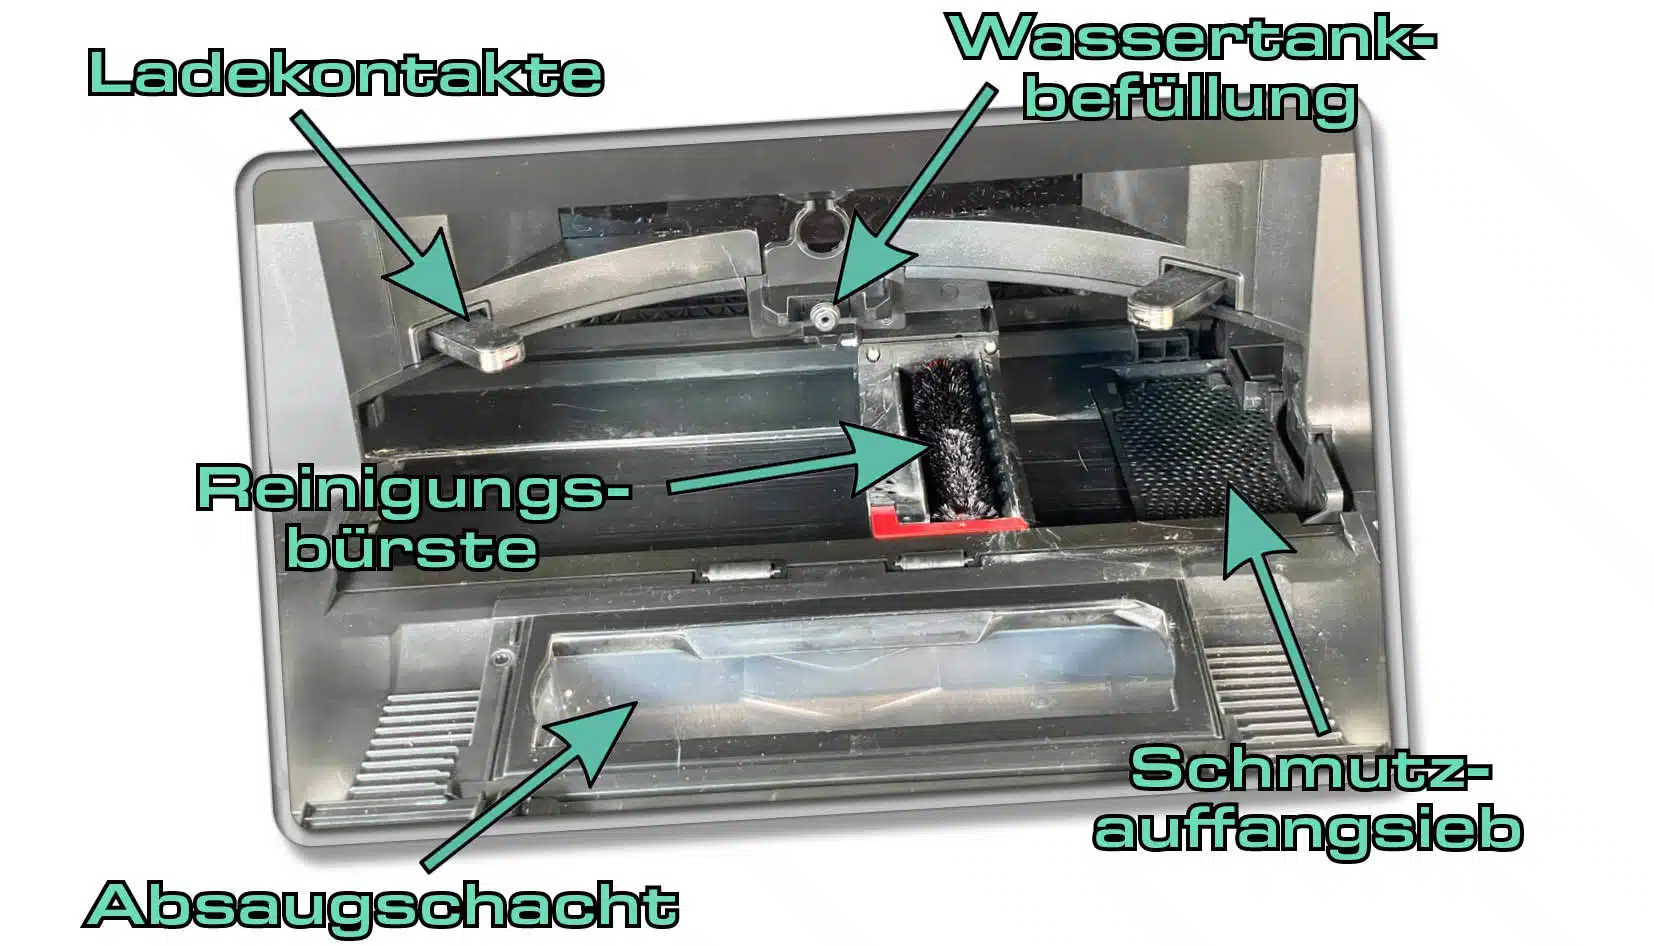 Die Garage des Roborock S7 MaxV Ultra versteckt zahlreiche nützliche Funktionen.